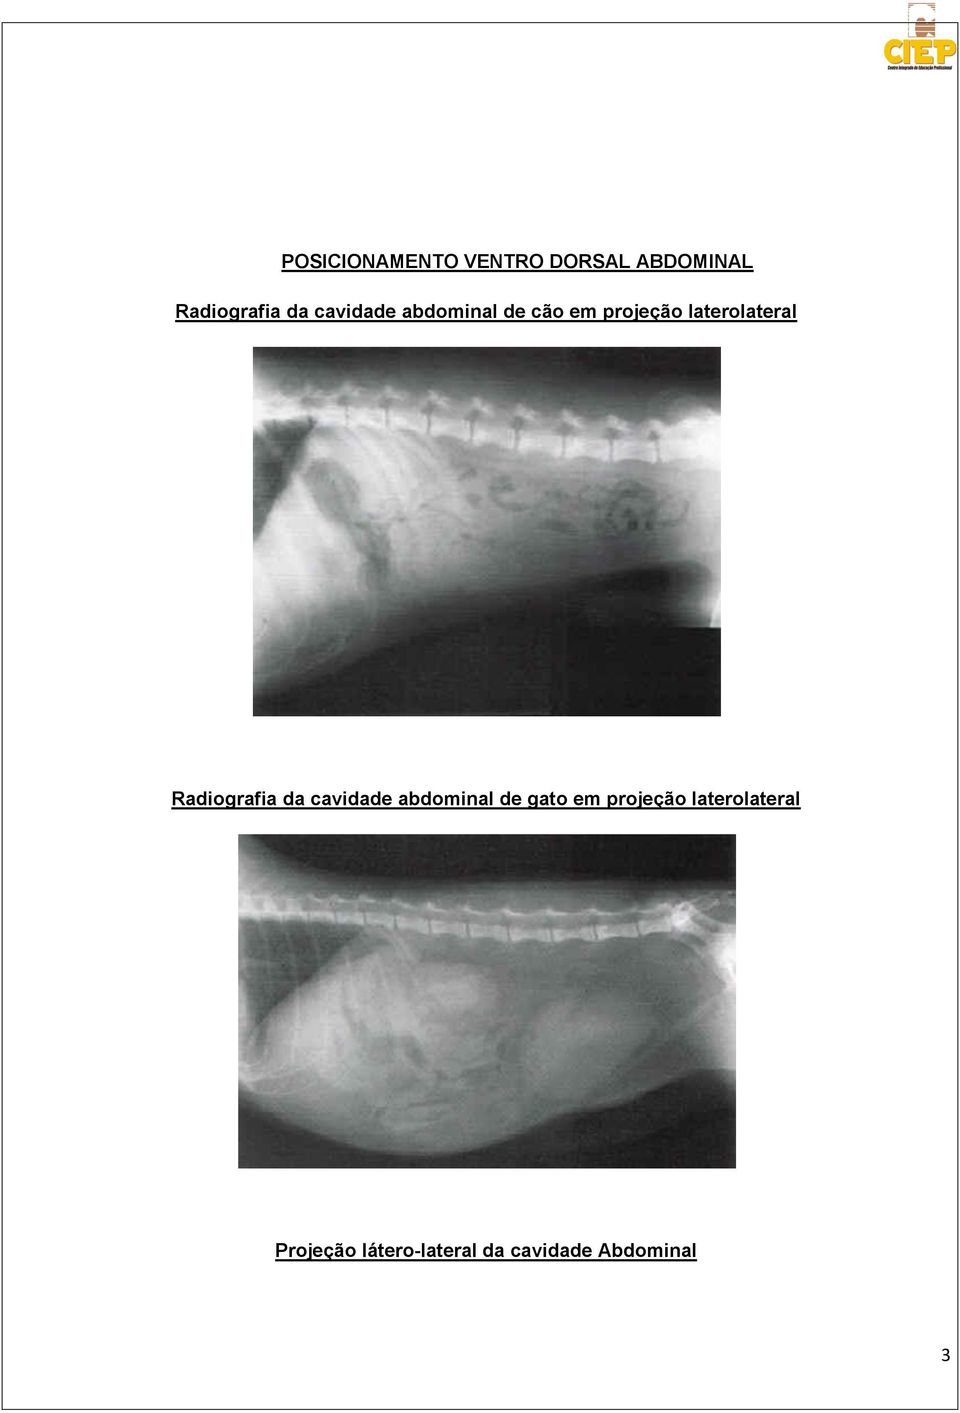 Radiografia da cavidade abdominal de gato em projeção